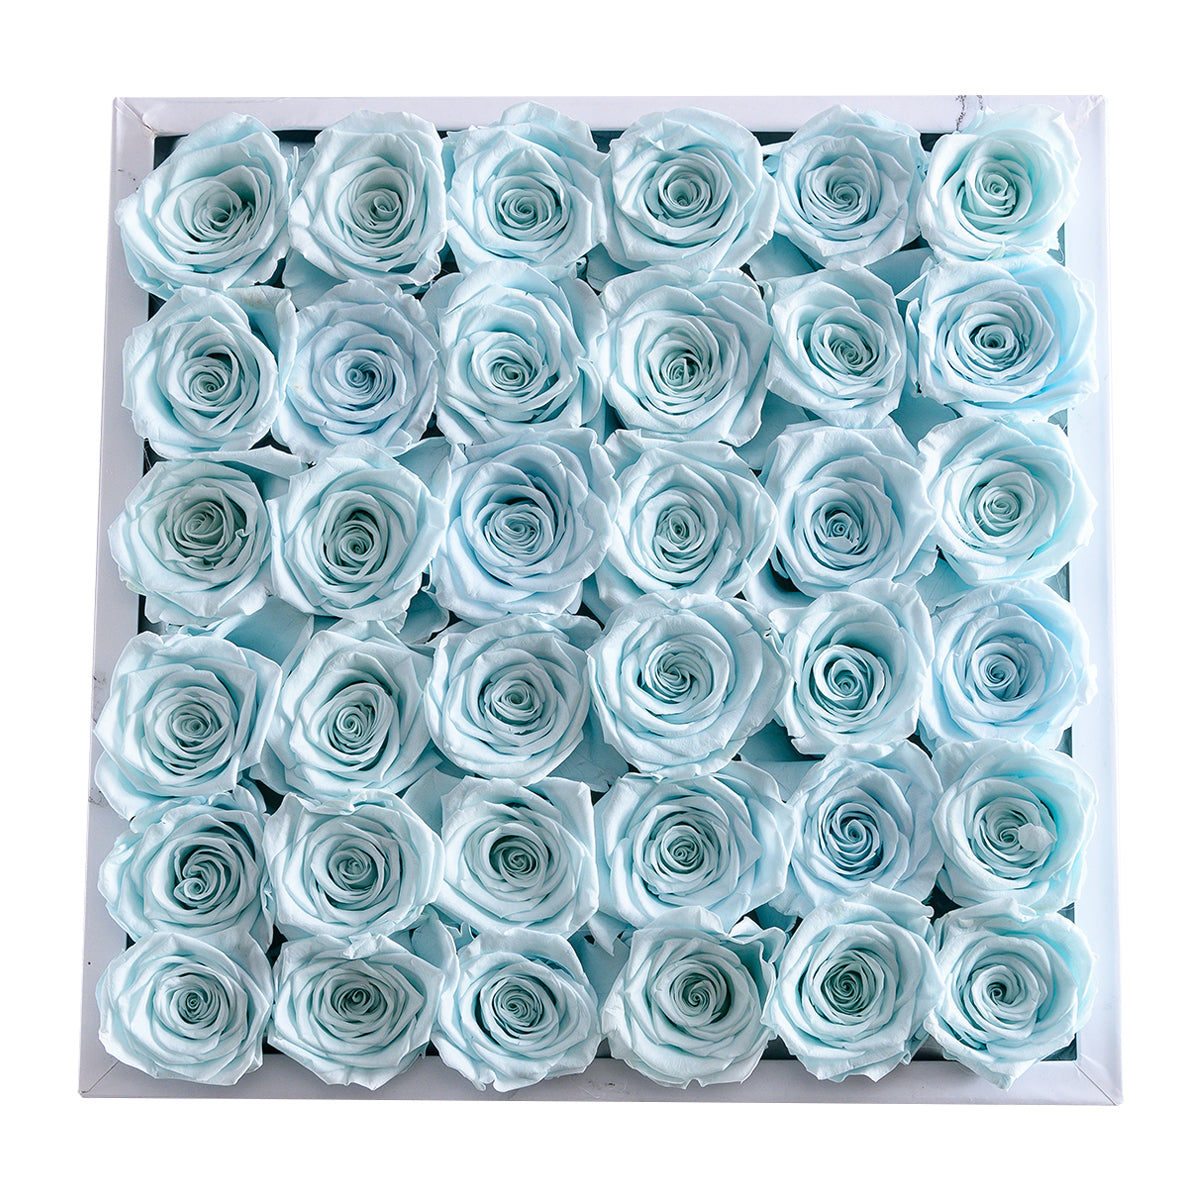 Intense White Marble Blue 36 | Rose Forever 